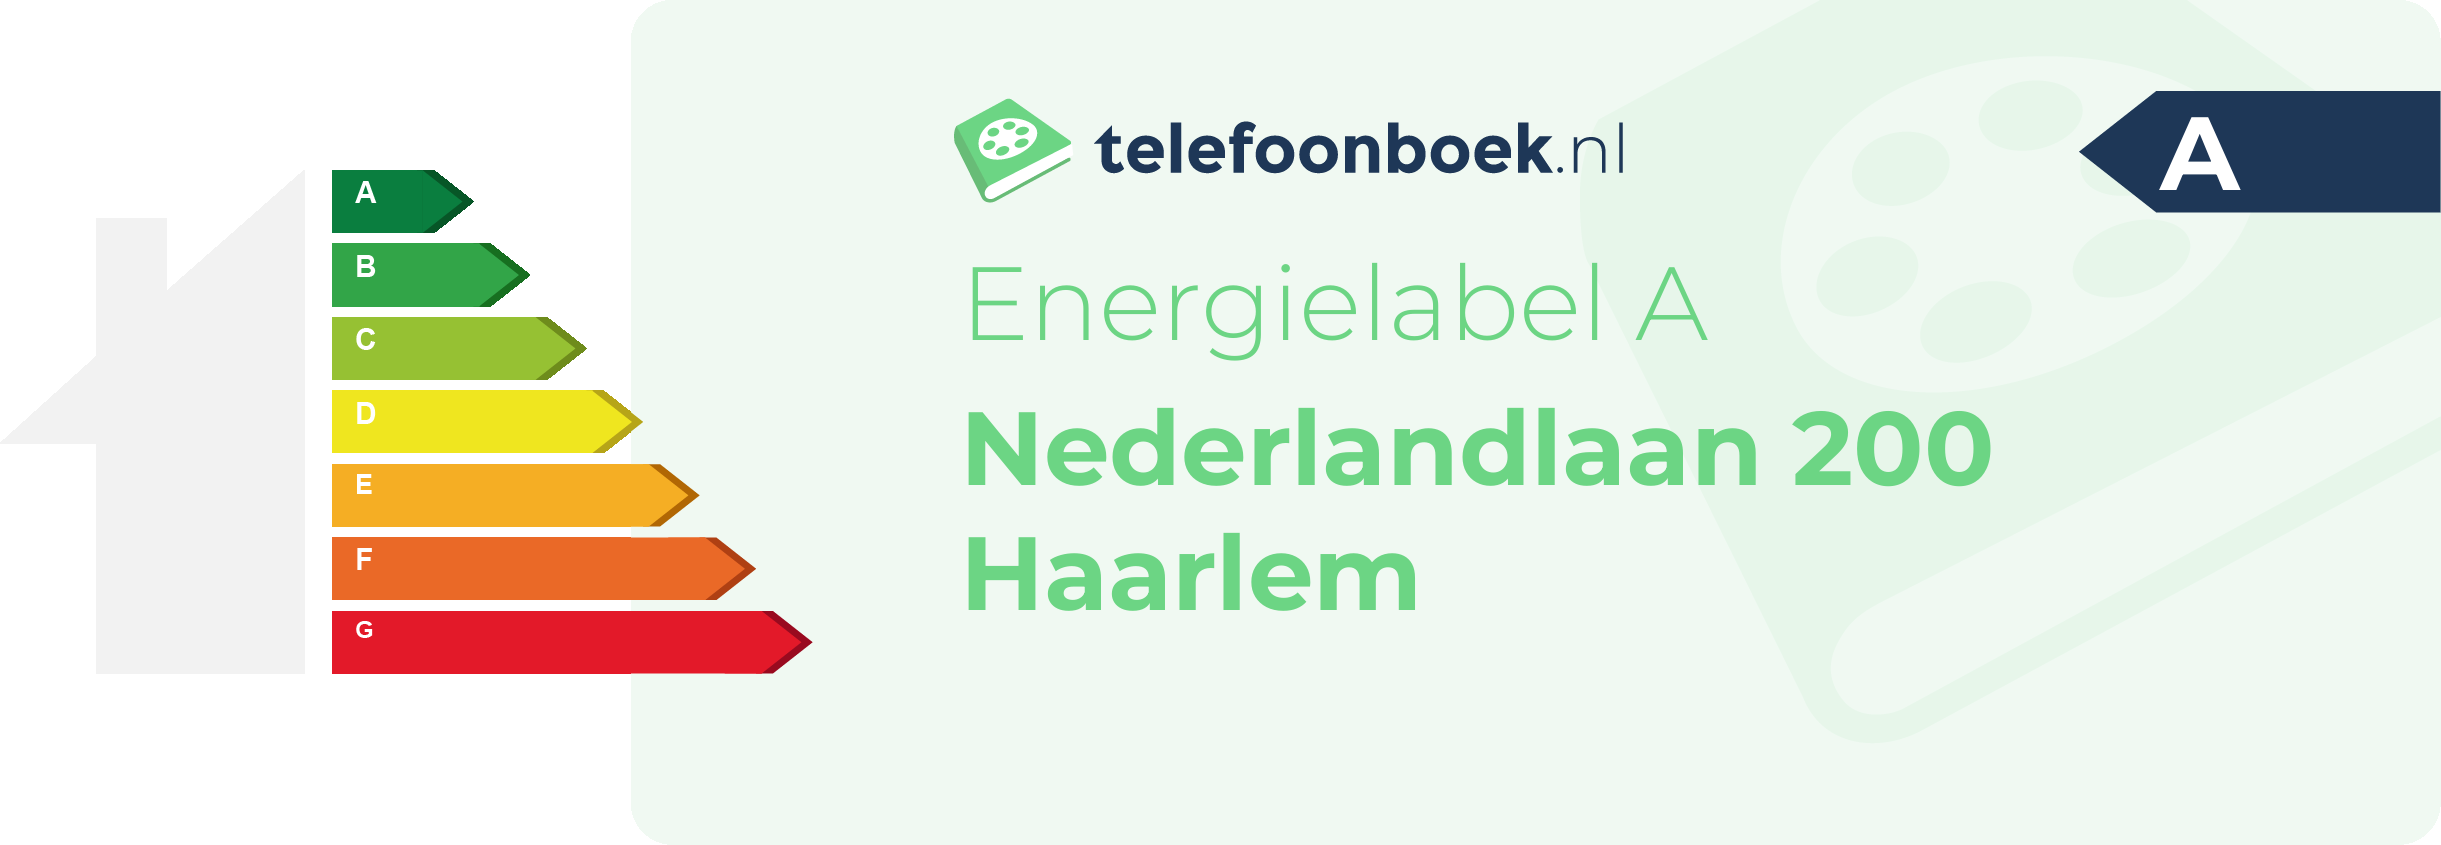 Energielabel Nederlandlaan 200 Haarlem